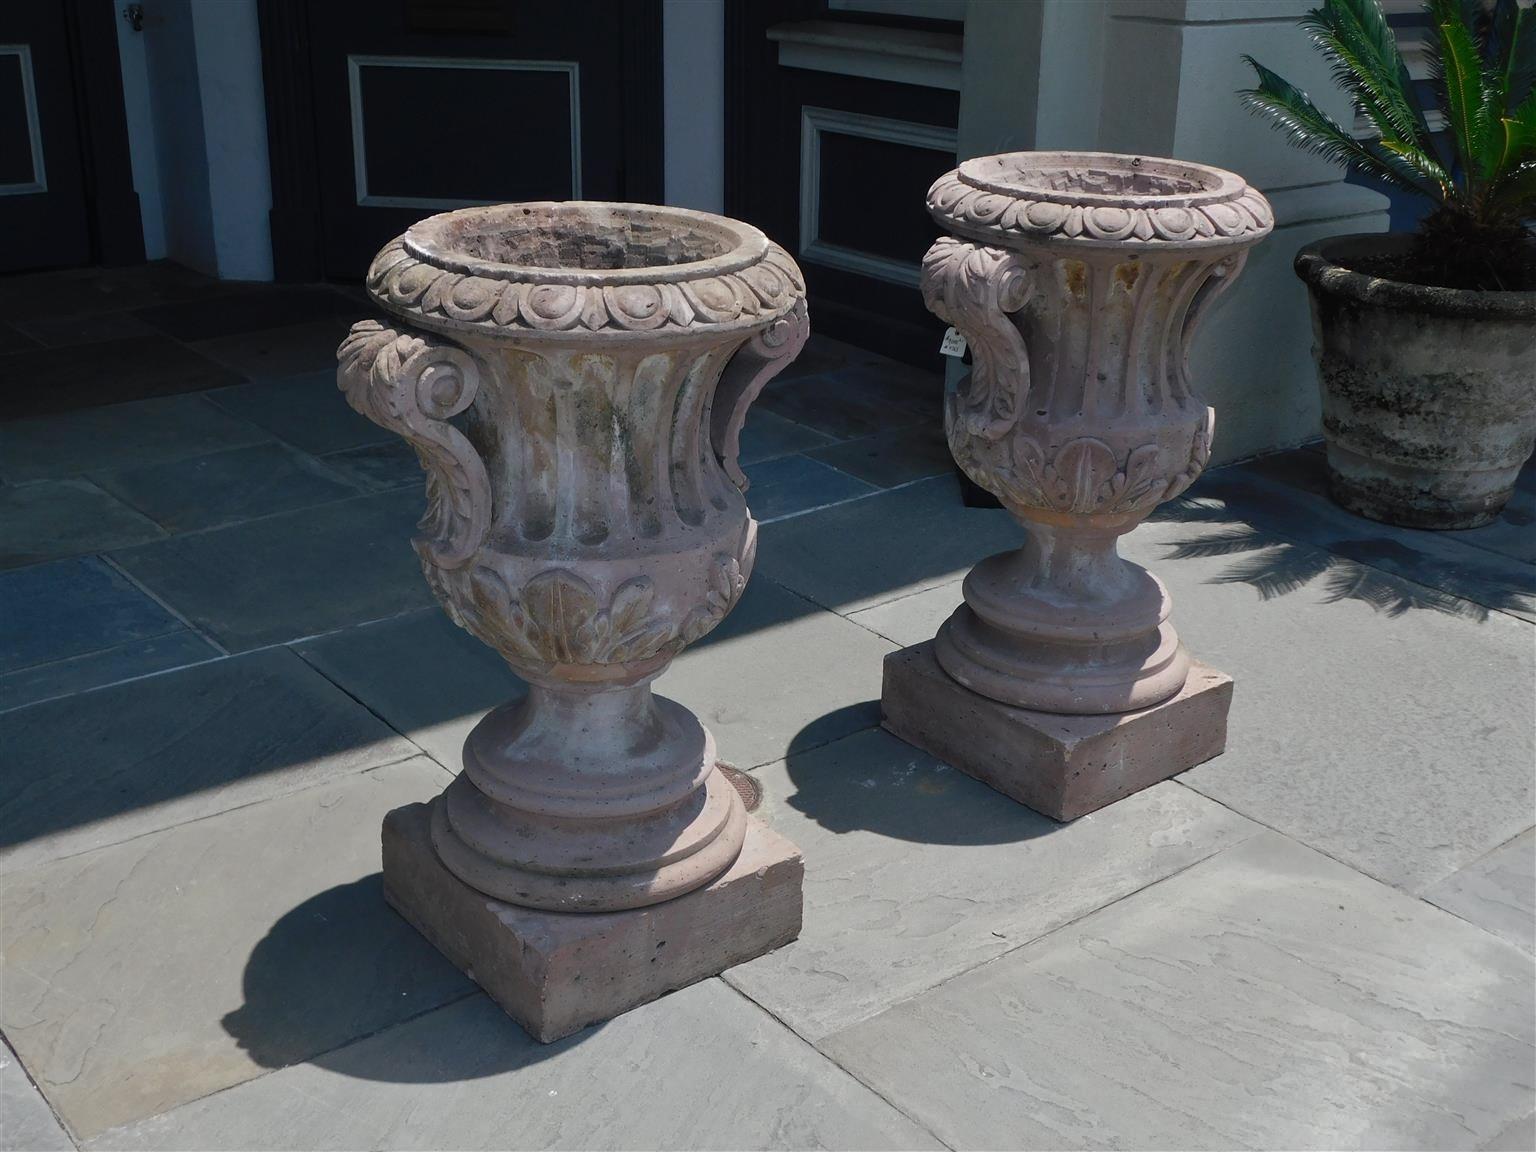 Paire d'urnes de jardin en grès italien sculpté à la main, de forme campanaire cannelée, avec des bordures en forme d'œuf et de dard, des poignées en volutes d'acanthe, et reposant sur des socles circulaires quadrillés. Début du 19e siècle. 23,5 de